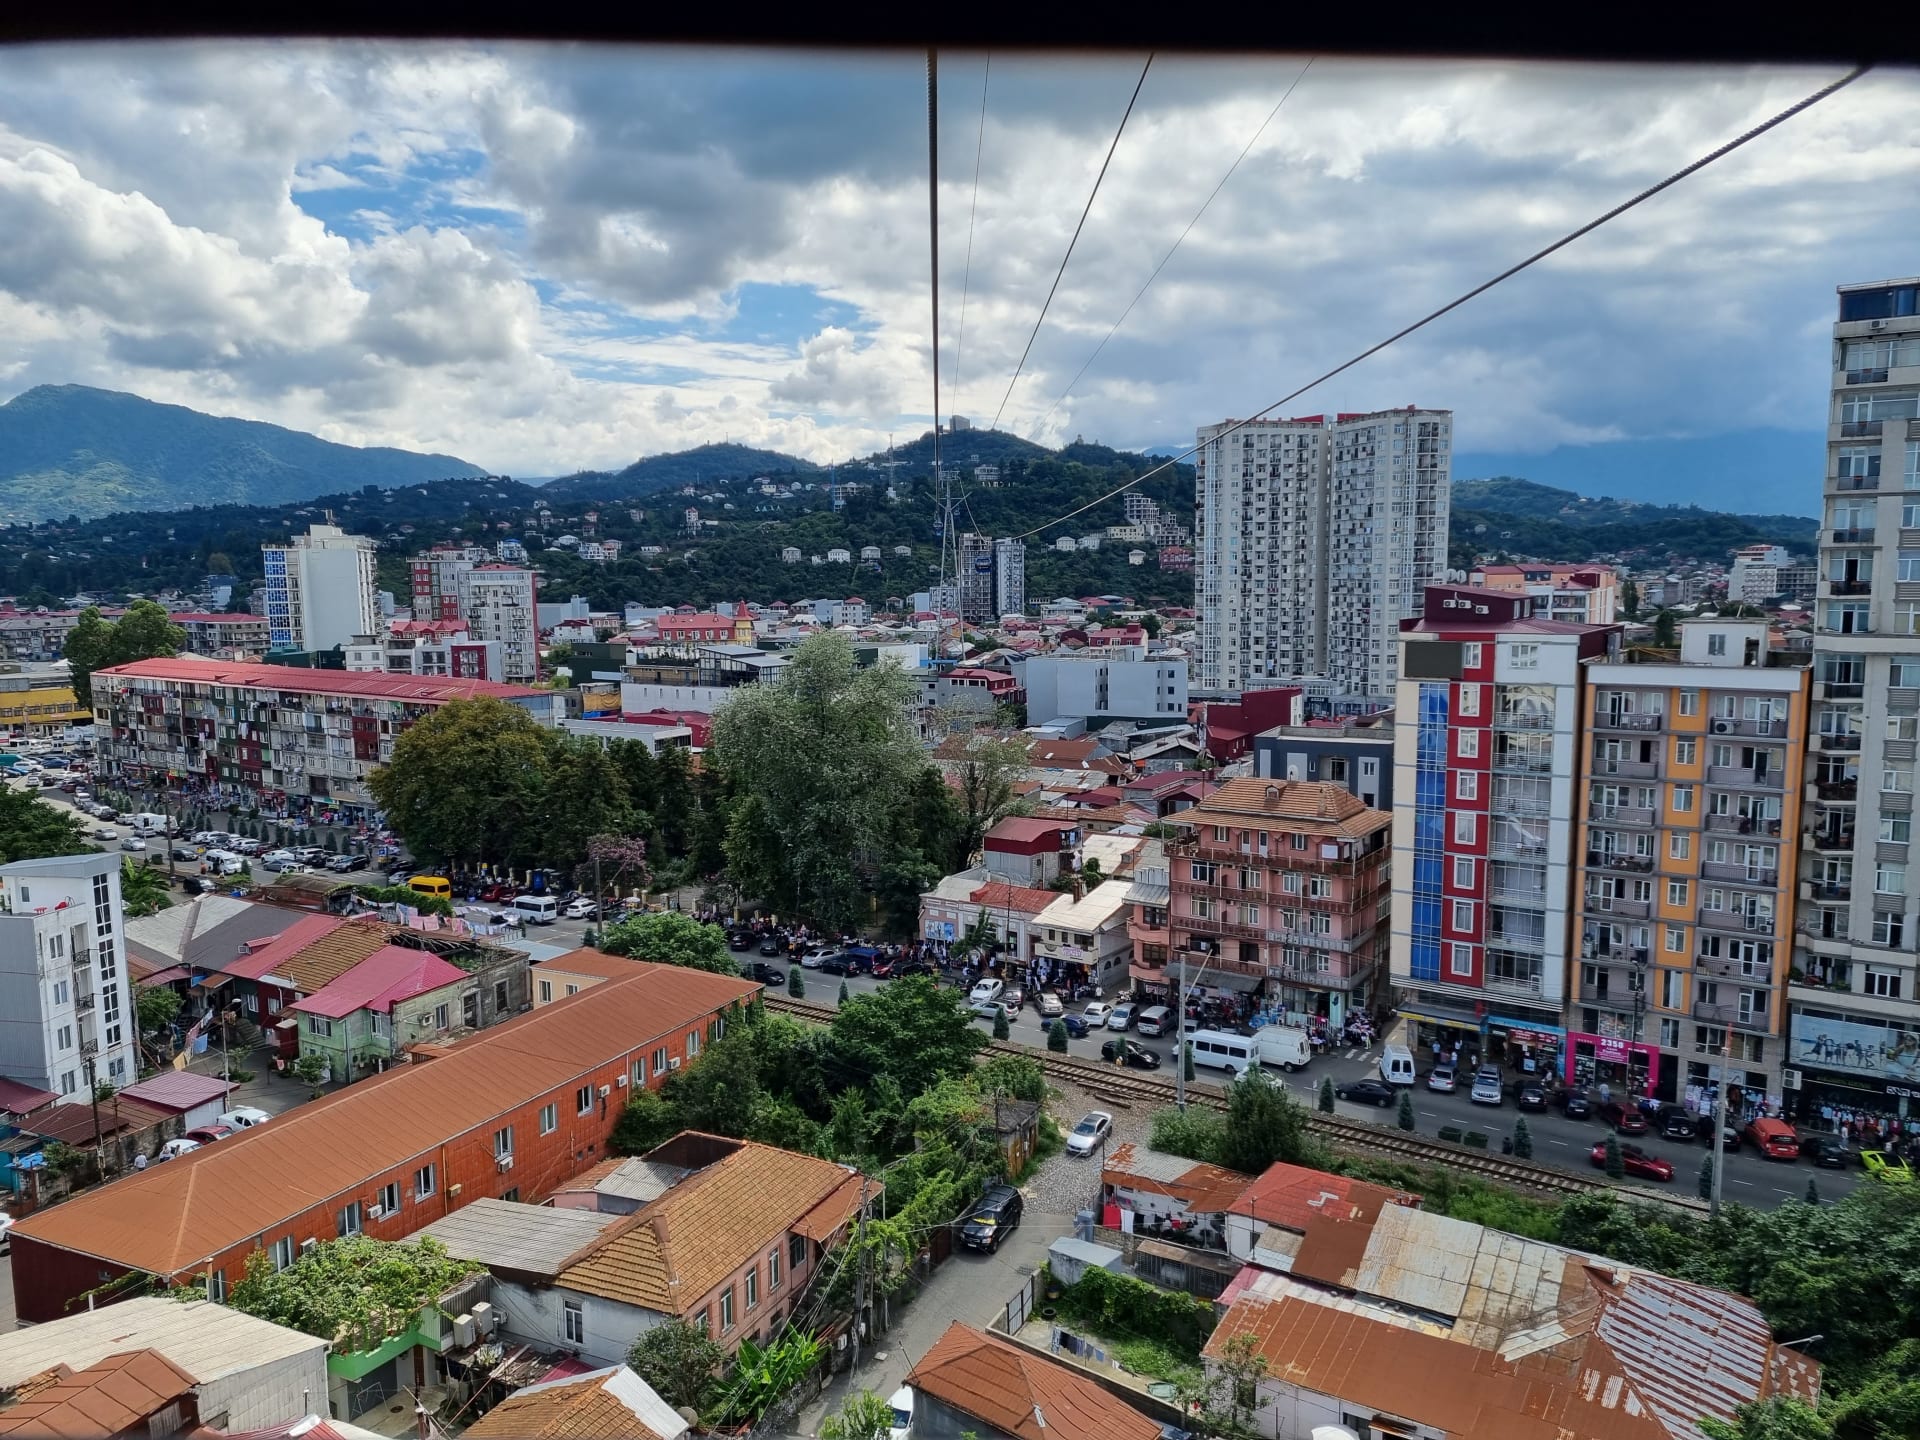 Výhled na město z kabinové lanovky Argo v Batumi.